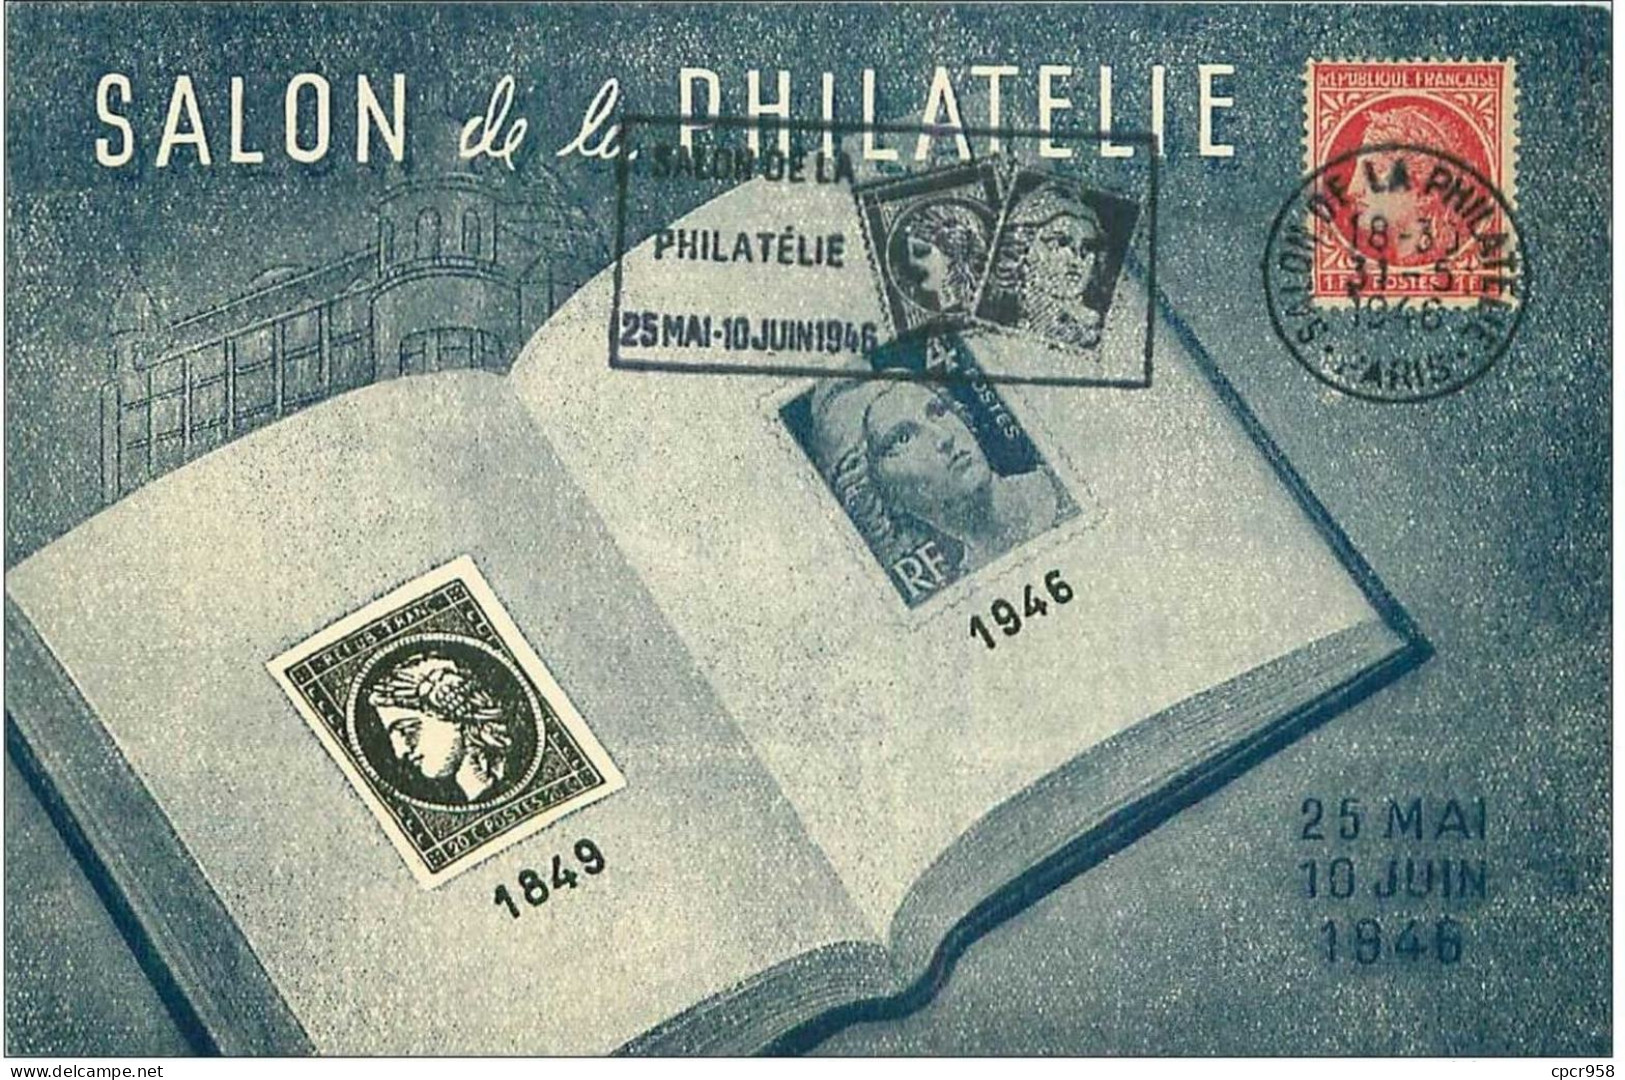 TIMBRES.n°13168.SALON DE LA PHILATELIE.1849.1946.LIVRE ET TIMBRES - ....-1949